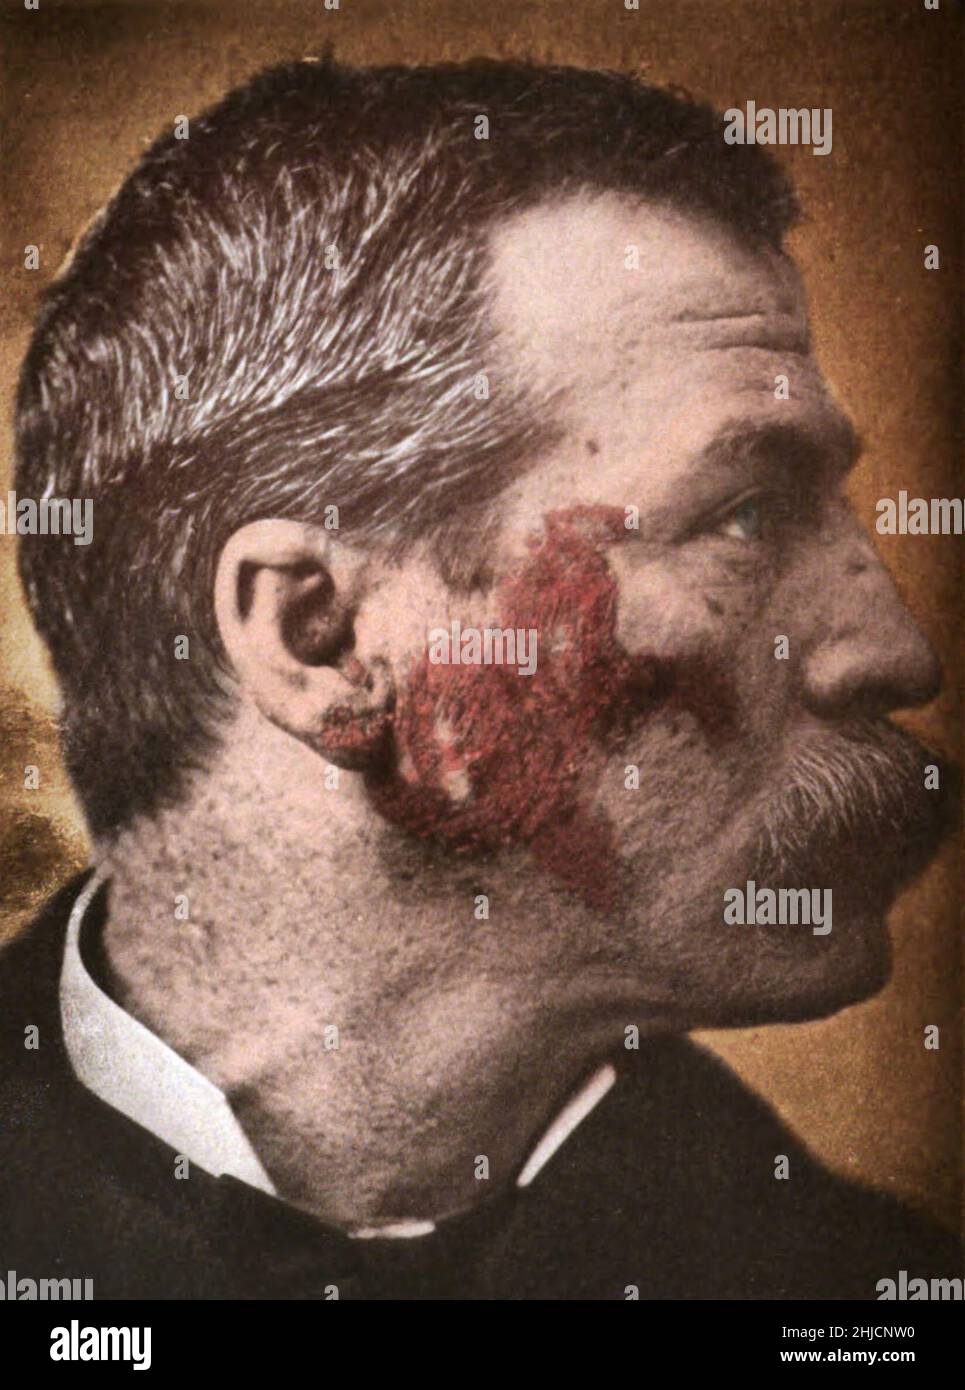 Lupus eritematoso, una malattia autoimmune. Si tratta di una malattia infiammatoria causata quando il sistema immunitario attacca i propri tessuti. Fotografato da George Henry Fox, 1886. Foto Stock